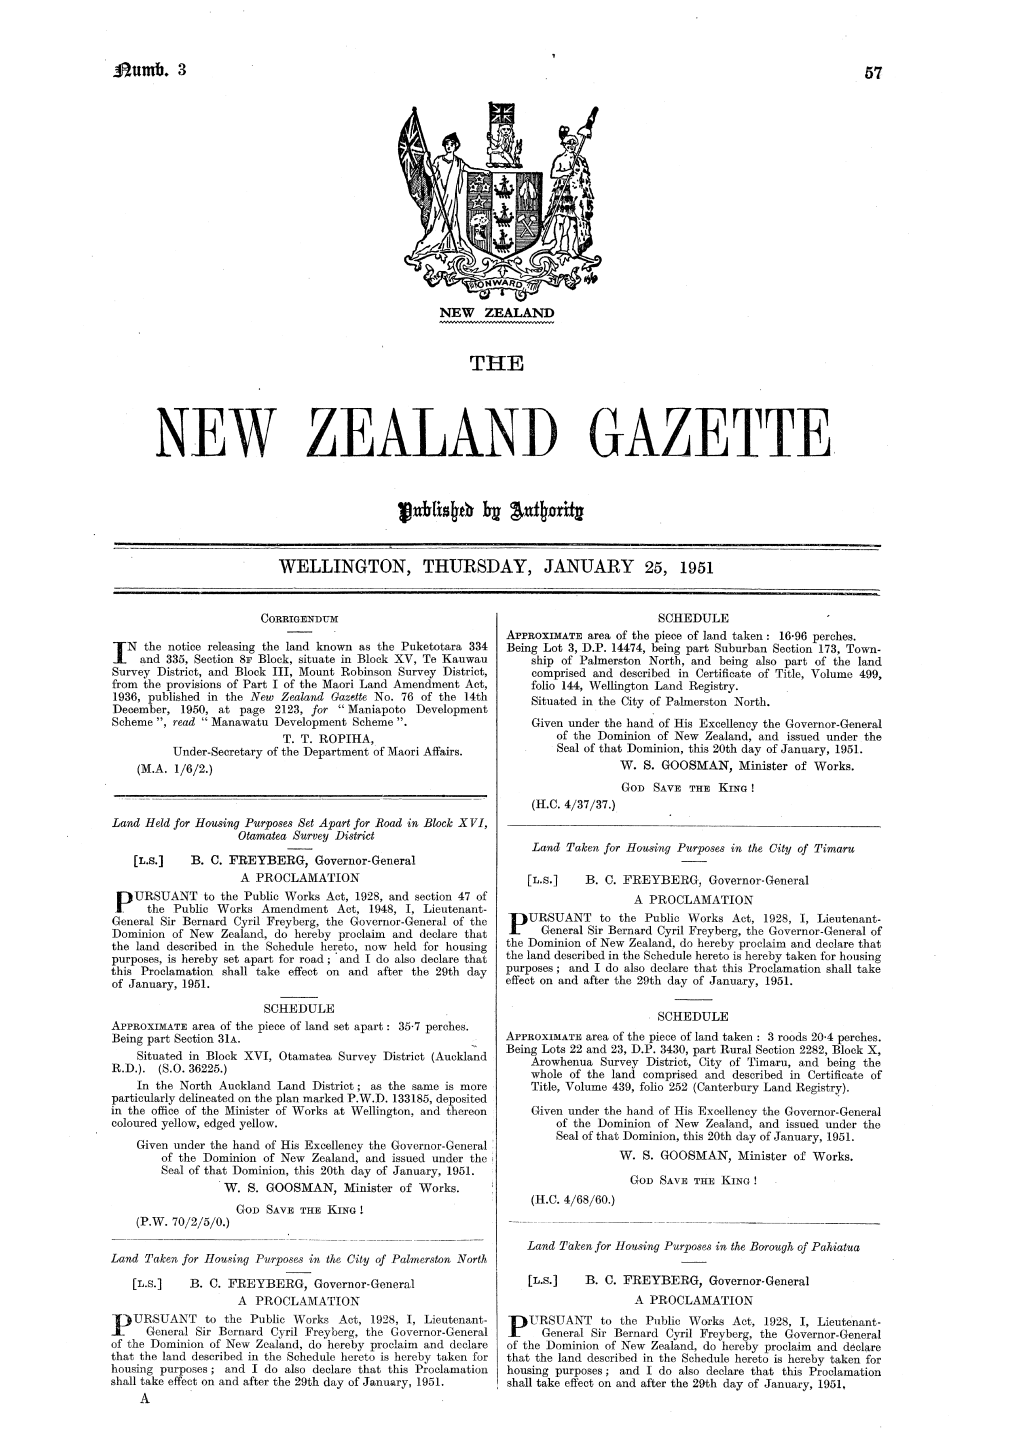 New Zealand Gaze11te